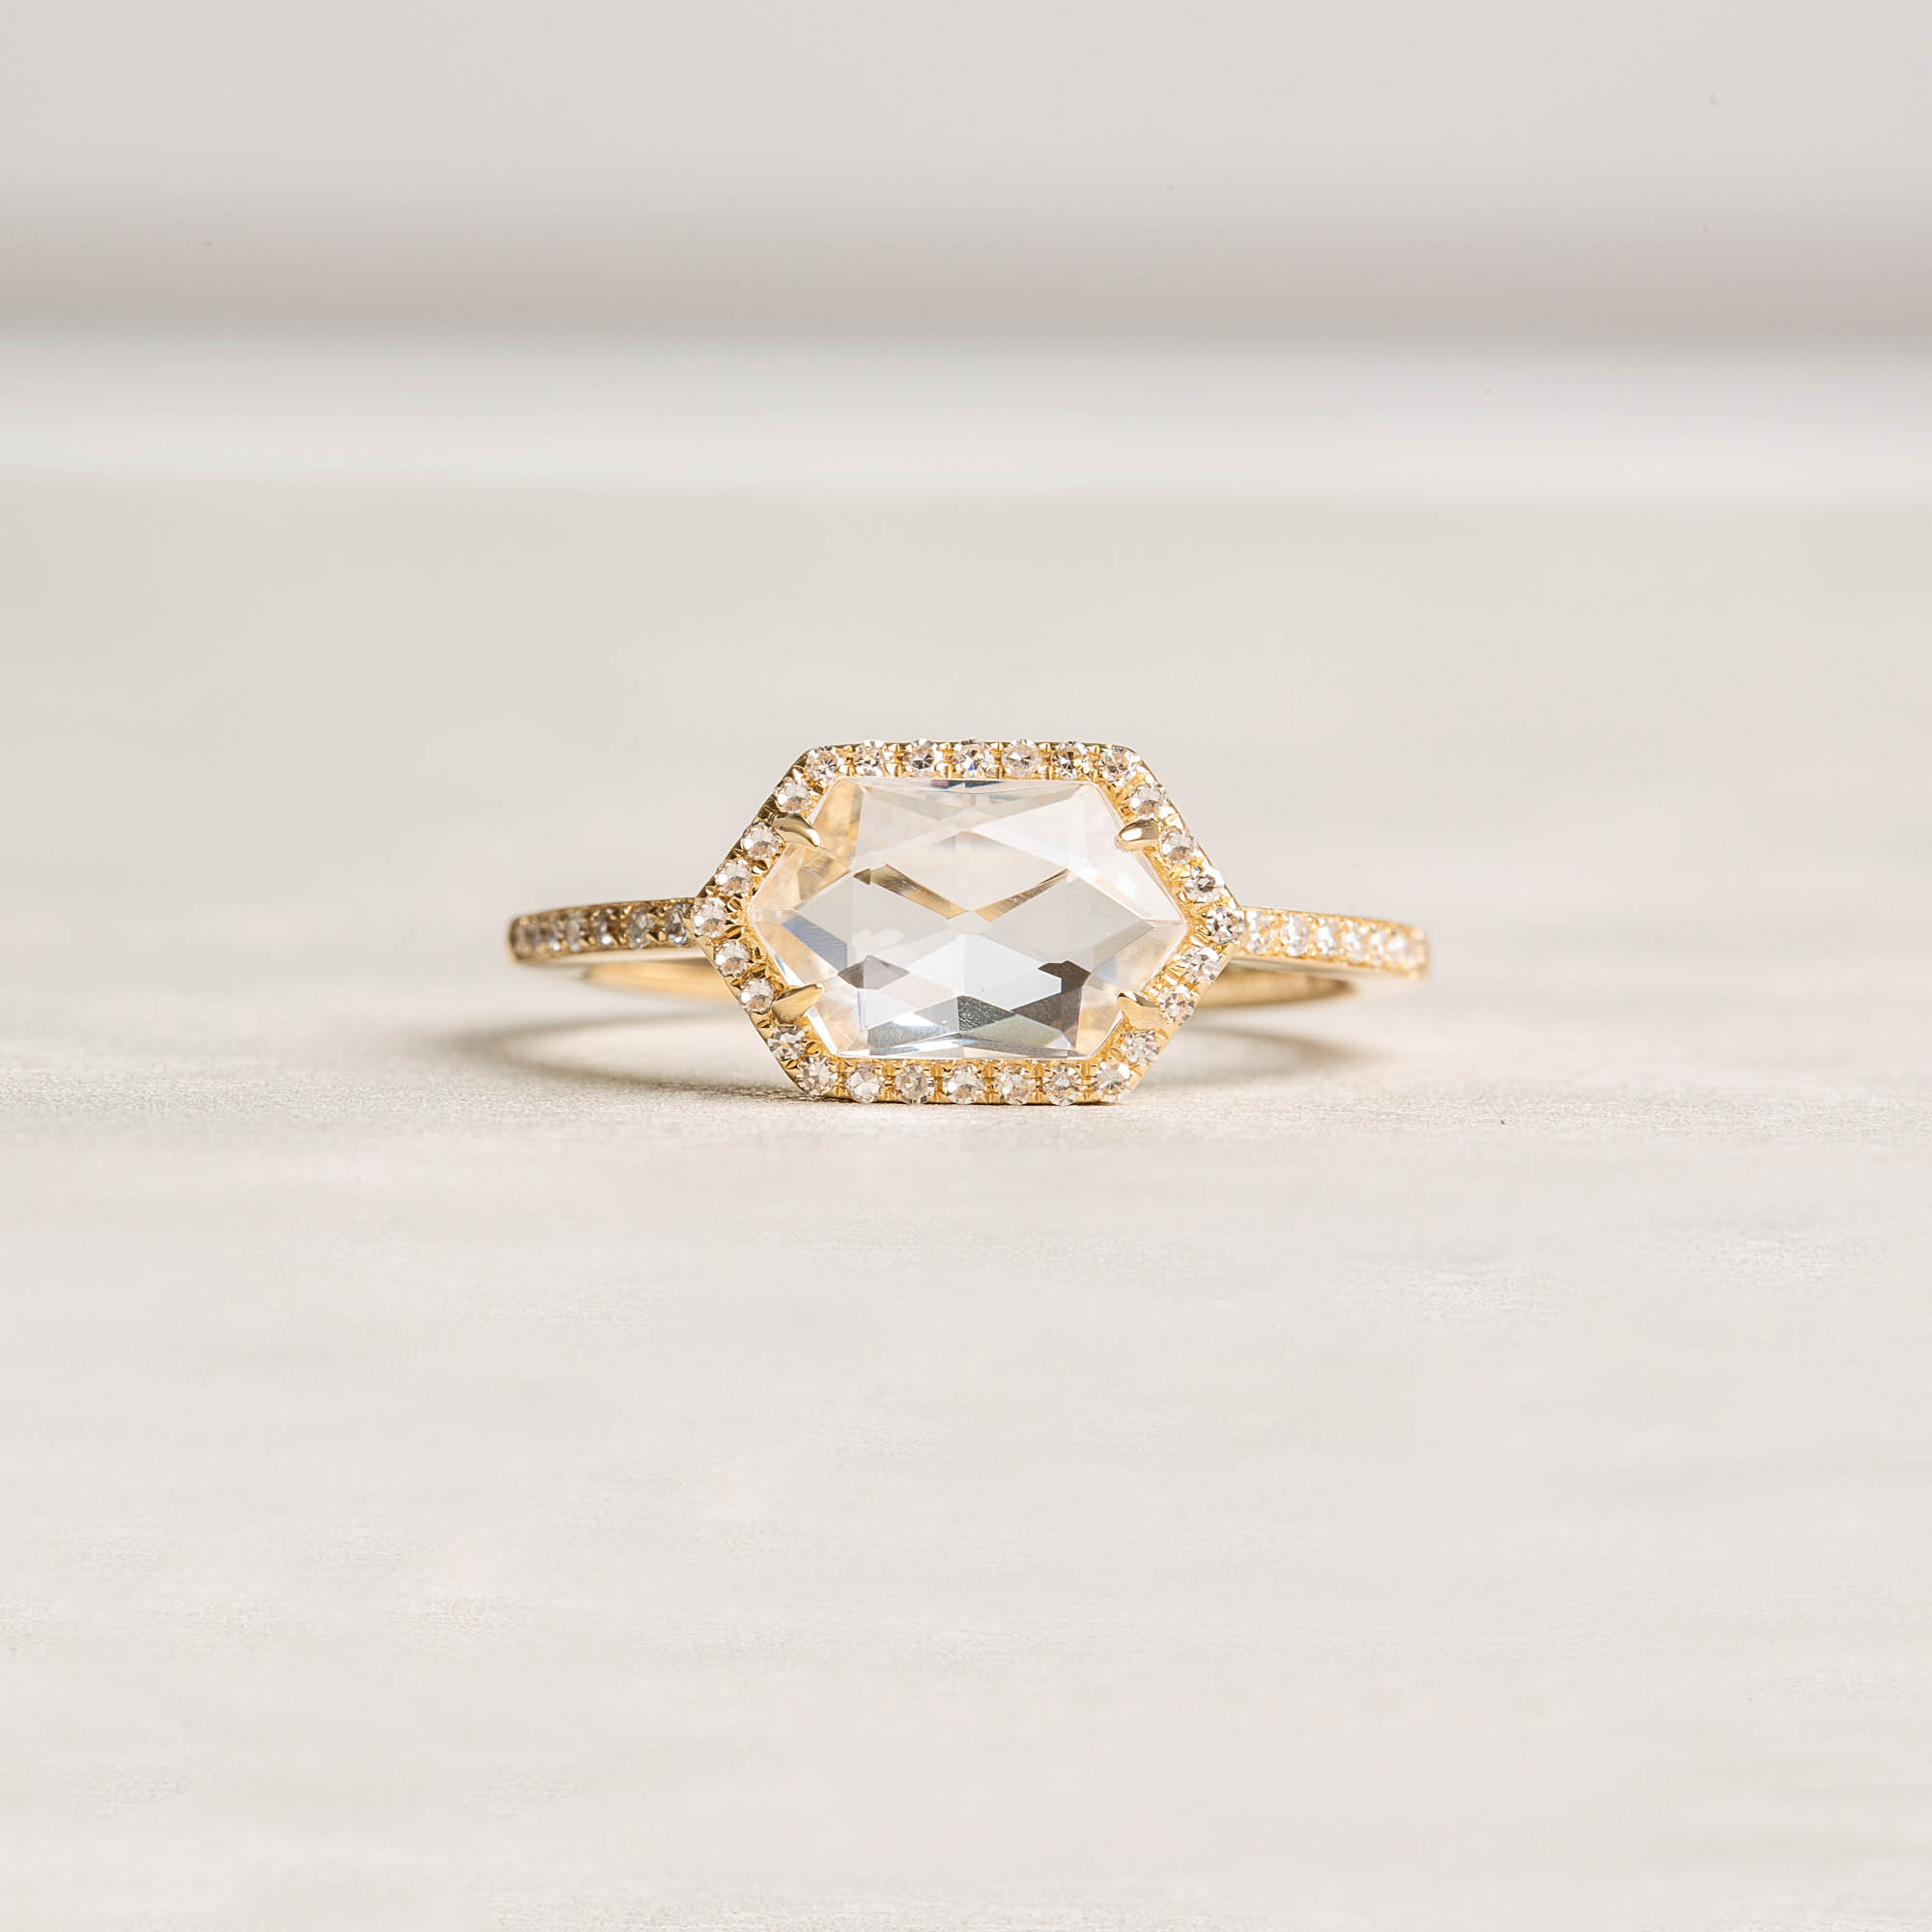 White topaz diamond ring